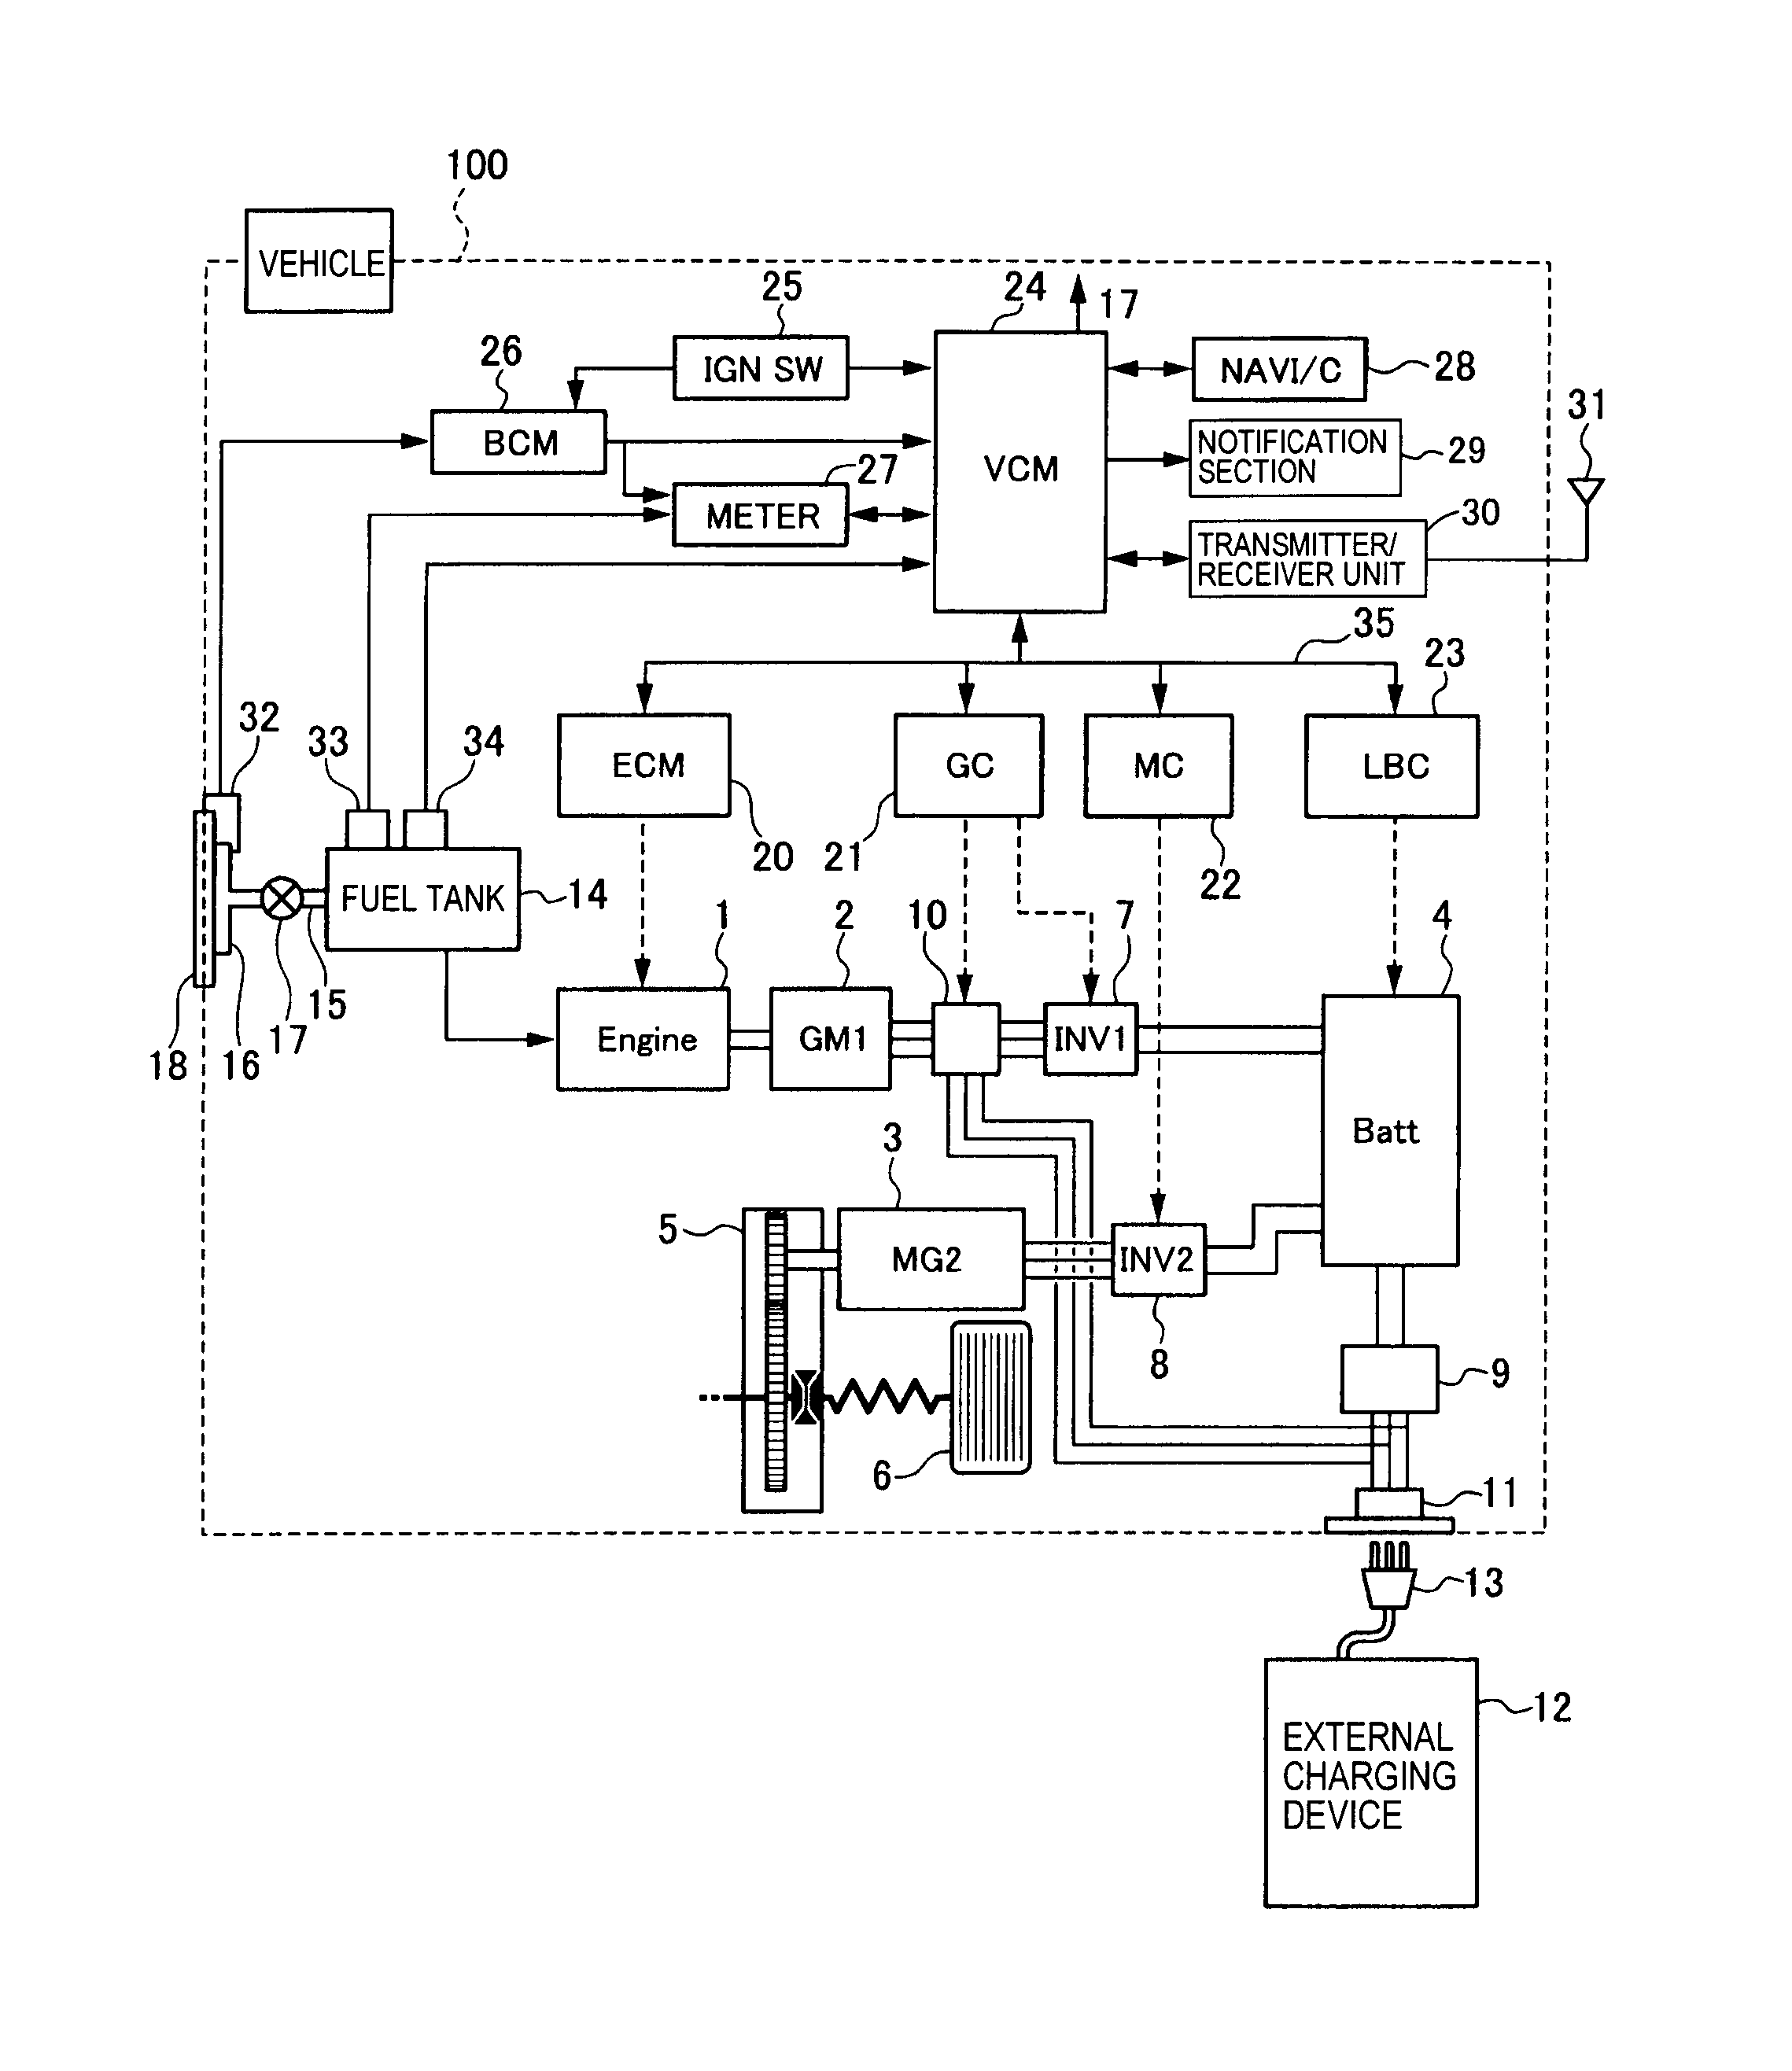 wiring diagram tiara 3100